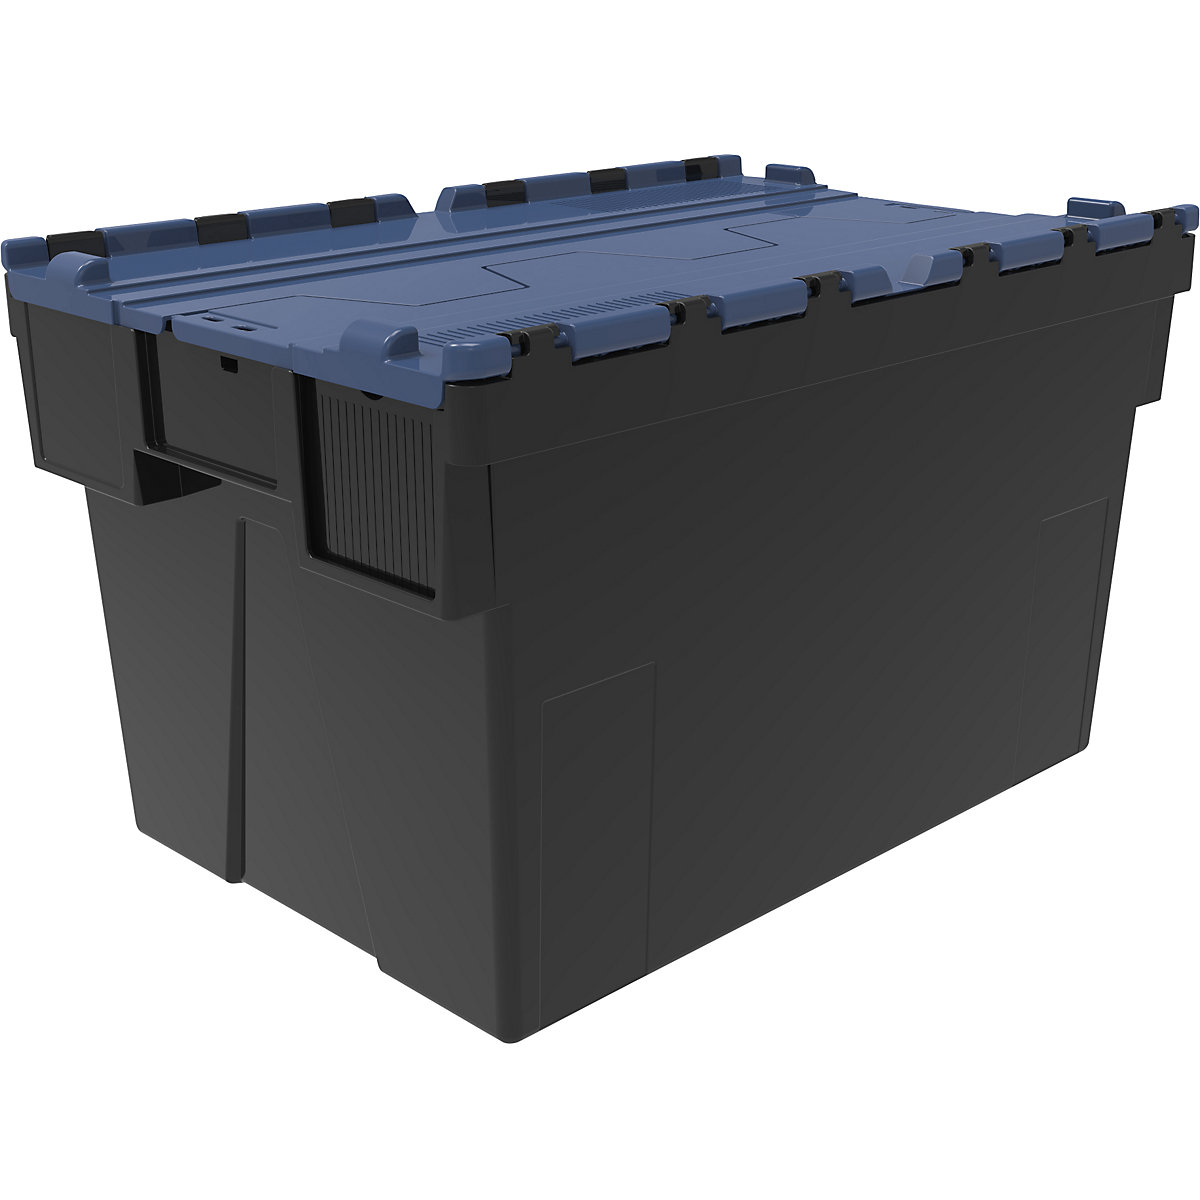 Recipiente empilhável e retornável, CxLxA 600 x 400 x 365 mm, embalagem de 5 unid., preto, tampa azul